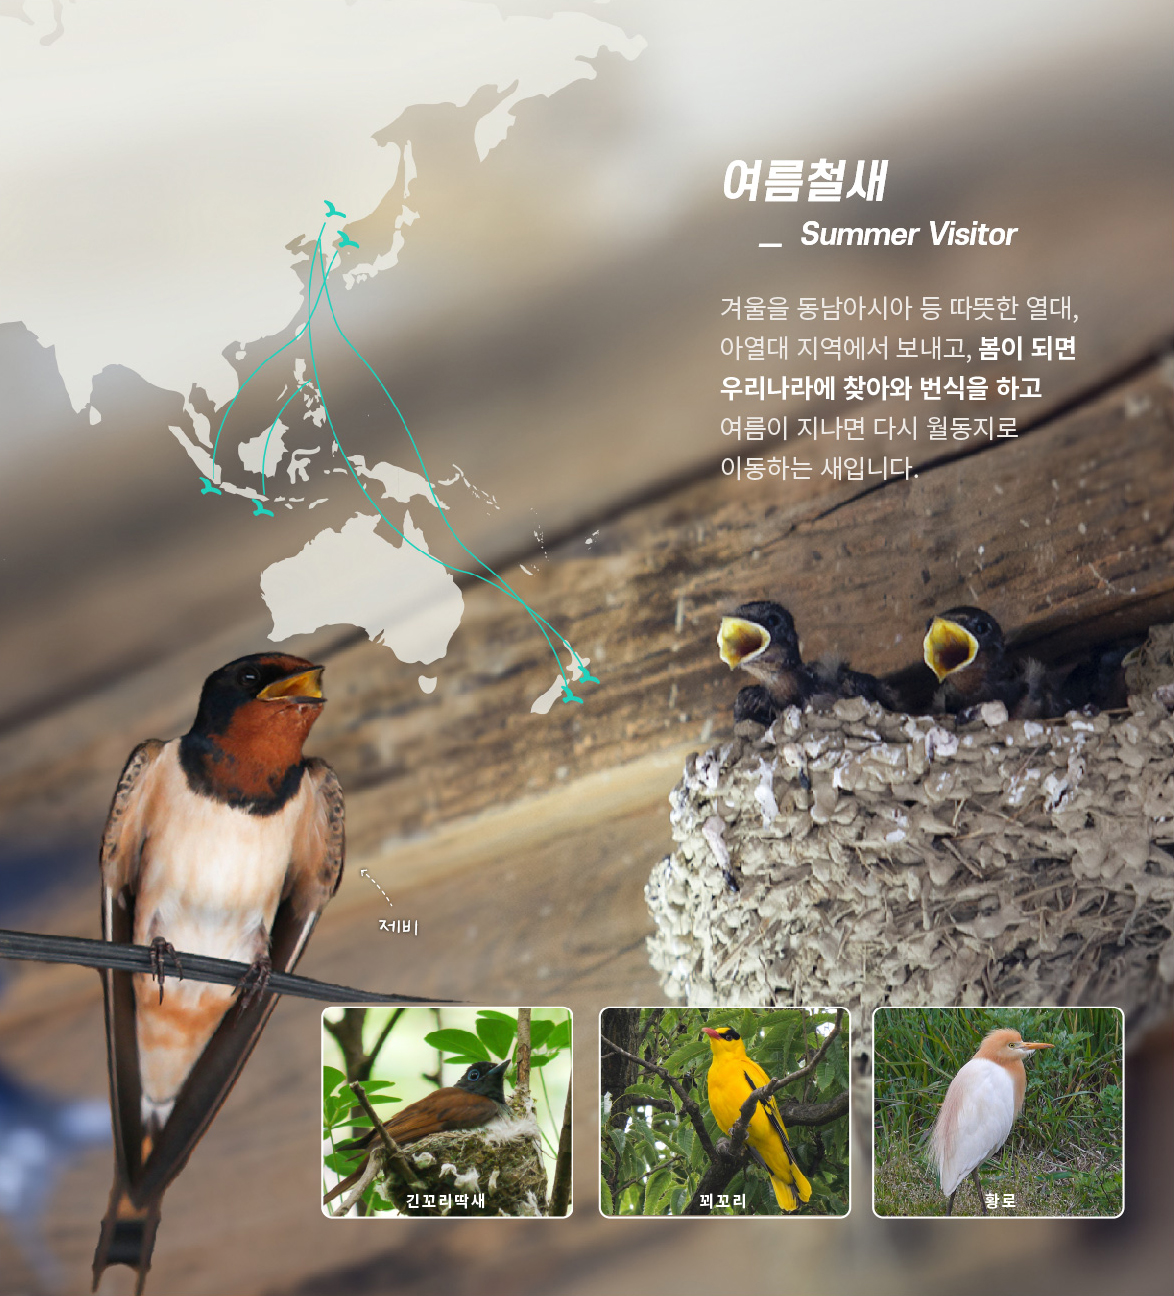 [여름철새] 겨울을 동남아시아 등 따뜻한 열대, 아열대 지역에서 보내고, 봄이 되면 우리나라에 찾아와 번식을 하고 여름이 지나면 다시 월동지로 이동하는 새입니다.